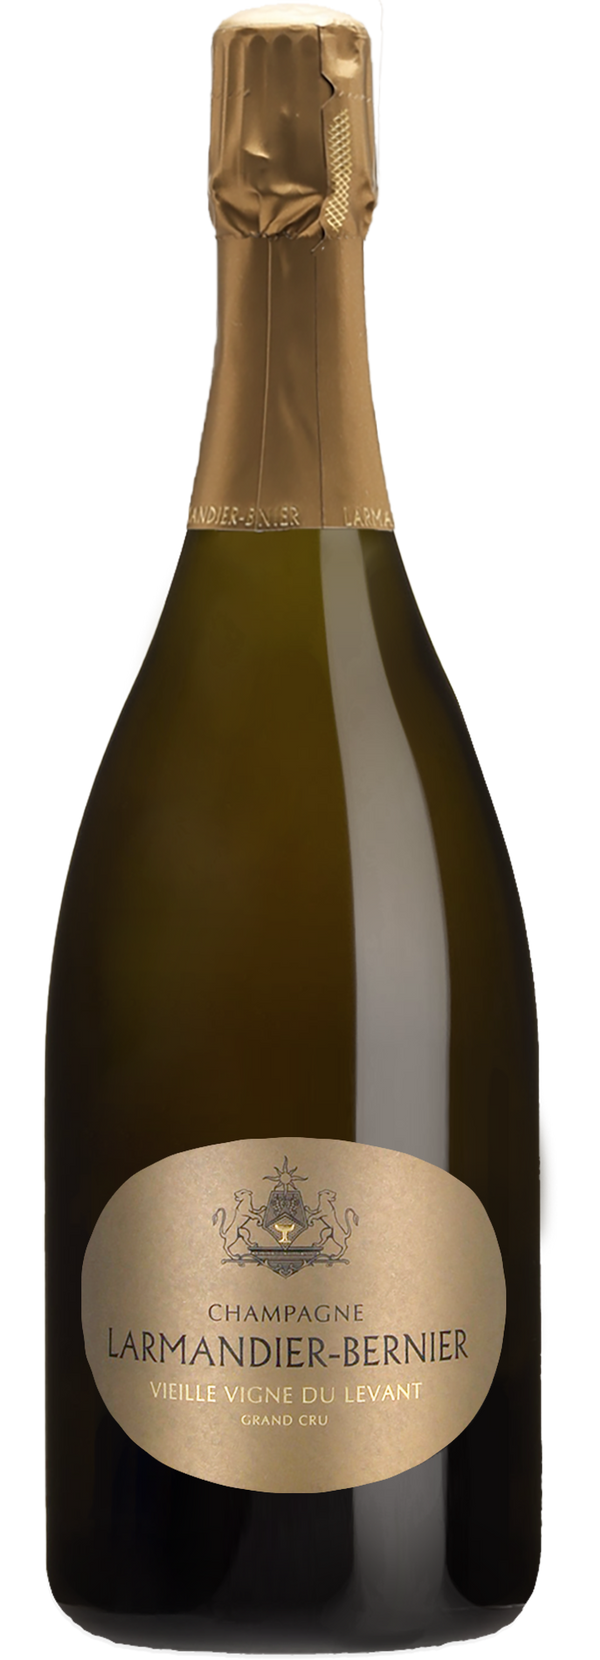 Champagne Larmandier-Bernier Grand Cru Vieille Vigne du Levant 2013 (Disg. Mar 2023) (1500ml)